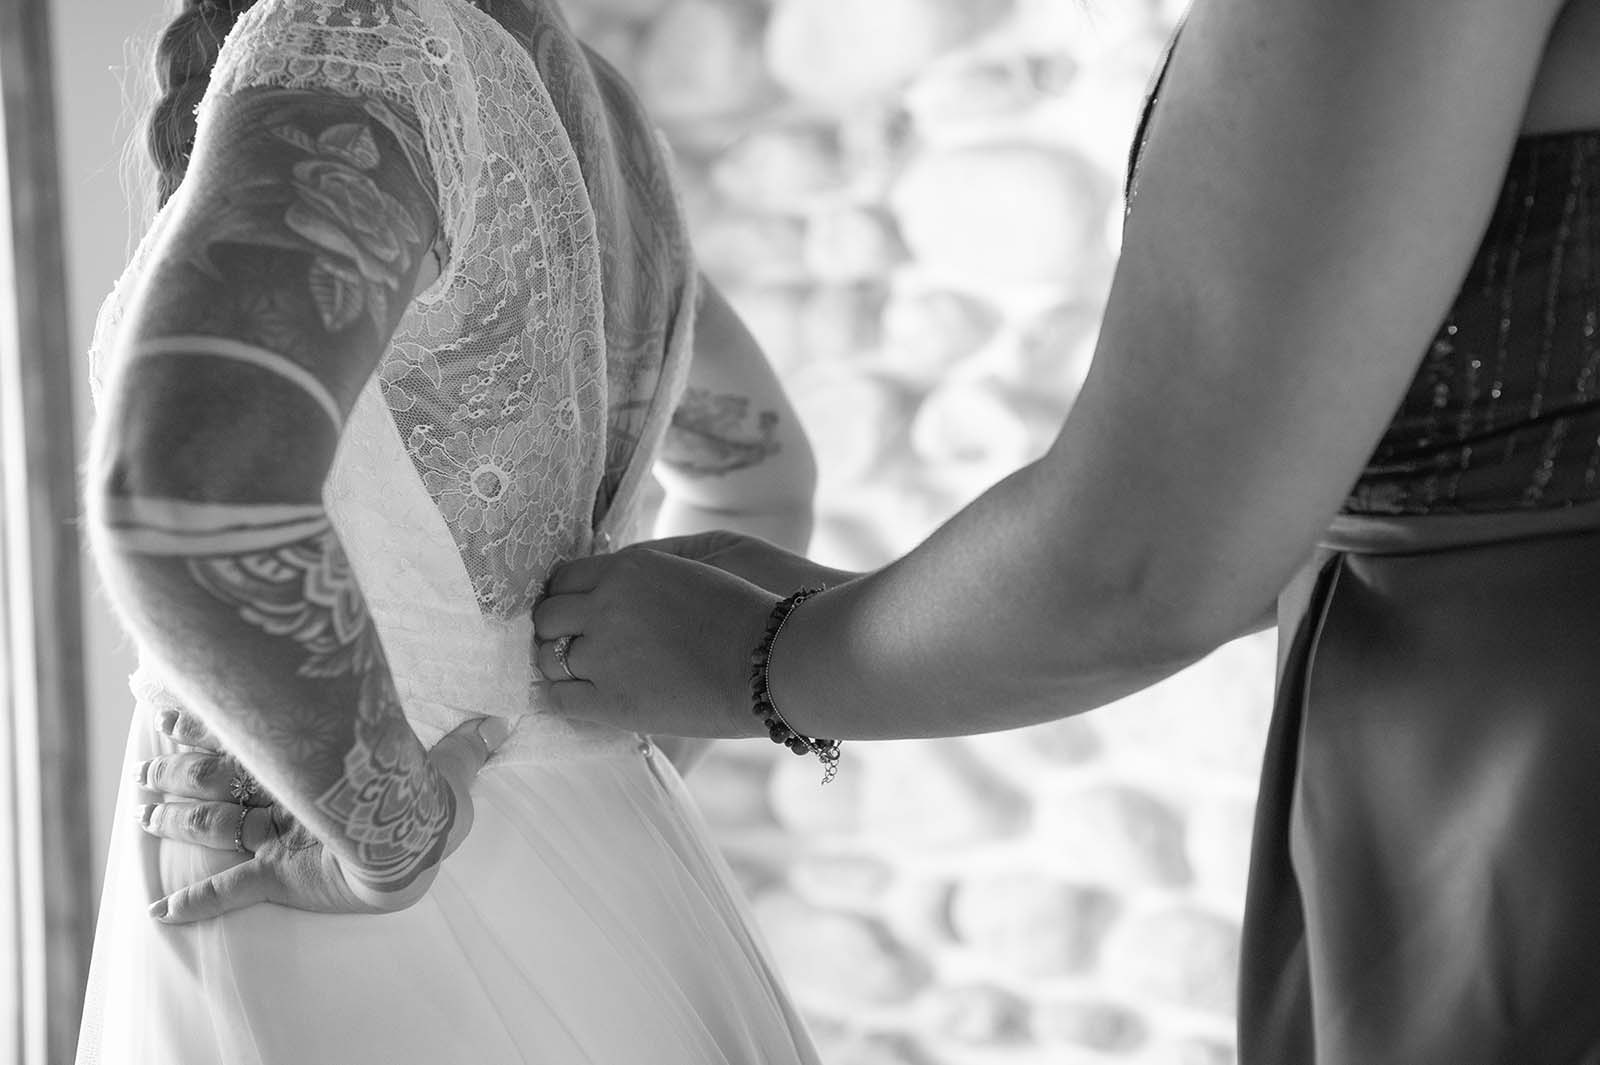 photo noir et blanc d'un gros plan sur une main en train de boutonner la robe d'une mariée